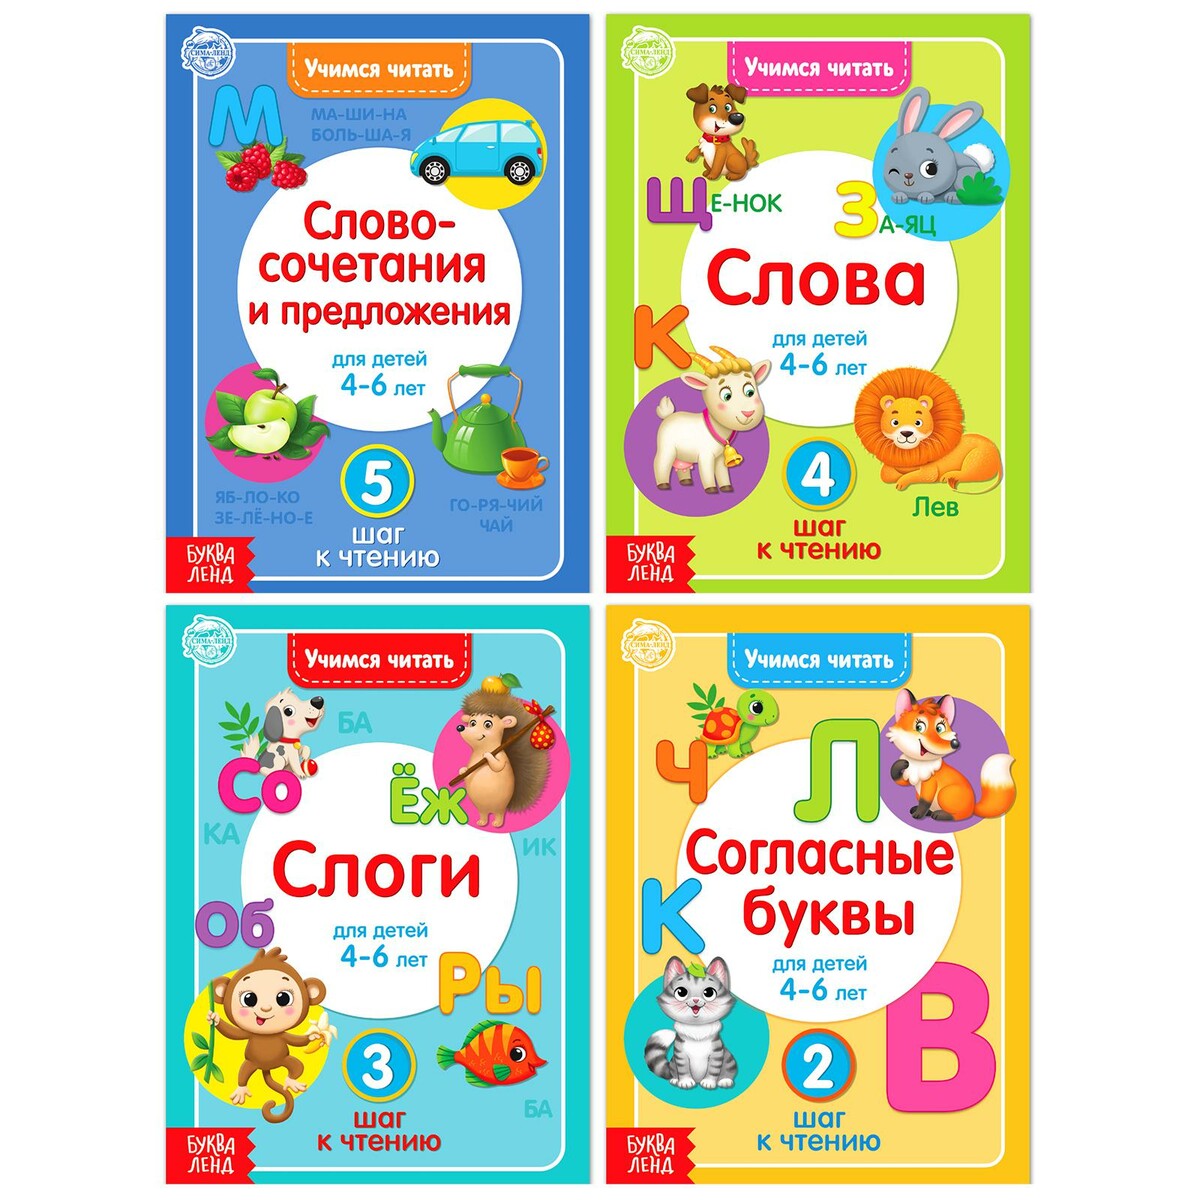 Набор книг домашняя школа учимся играя комплект из 2 книг 2 набора карточек